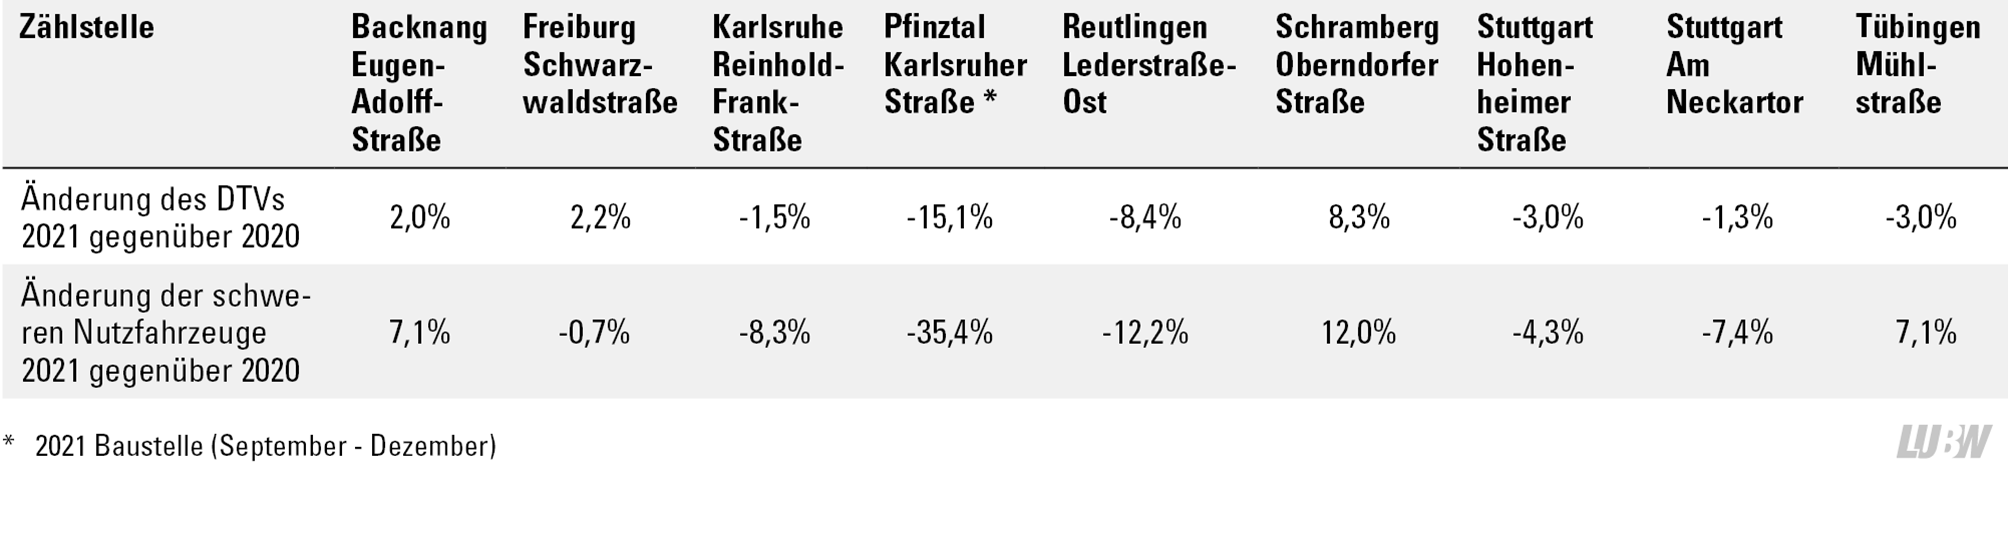 Tabellarische Darstellung der prozentualen Veränderungen der Verkehrsstärken (DTV) und der schweren Nutzfahrzeuge 2021 gegenüber 2020 an den Verkehrszählstellen. Die Änderungen des DTVs 2021 gegenüber 2020 liegen zwischen -15,1 Prozent (Pfinztal Karlsruher Straße, Baustelleneinfluss von September 2021 bis Dezember 2021) bis +8,3 Prozent (Schramberg Oberndorfer Straße). Die Änderungen der schweren Nutzfahrzeuge 2021 gegenüber 2020 zeigen eine Spannweite von -35,4 Prozent (Pfinztal Karlsruher Straße, Baustelleneinfluss von September 2021 bis Dezember 2021) bis +12 Prozent (Schramberg Oberndorfer Straße).